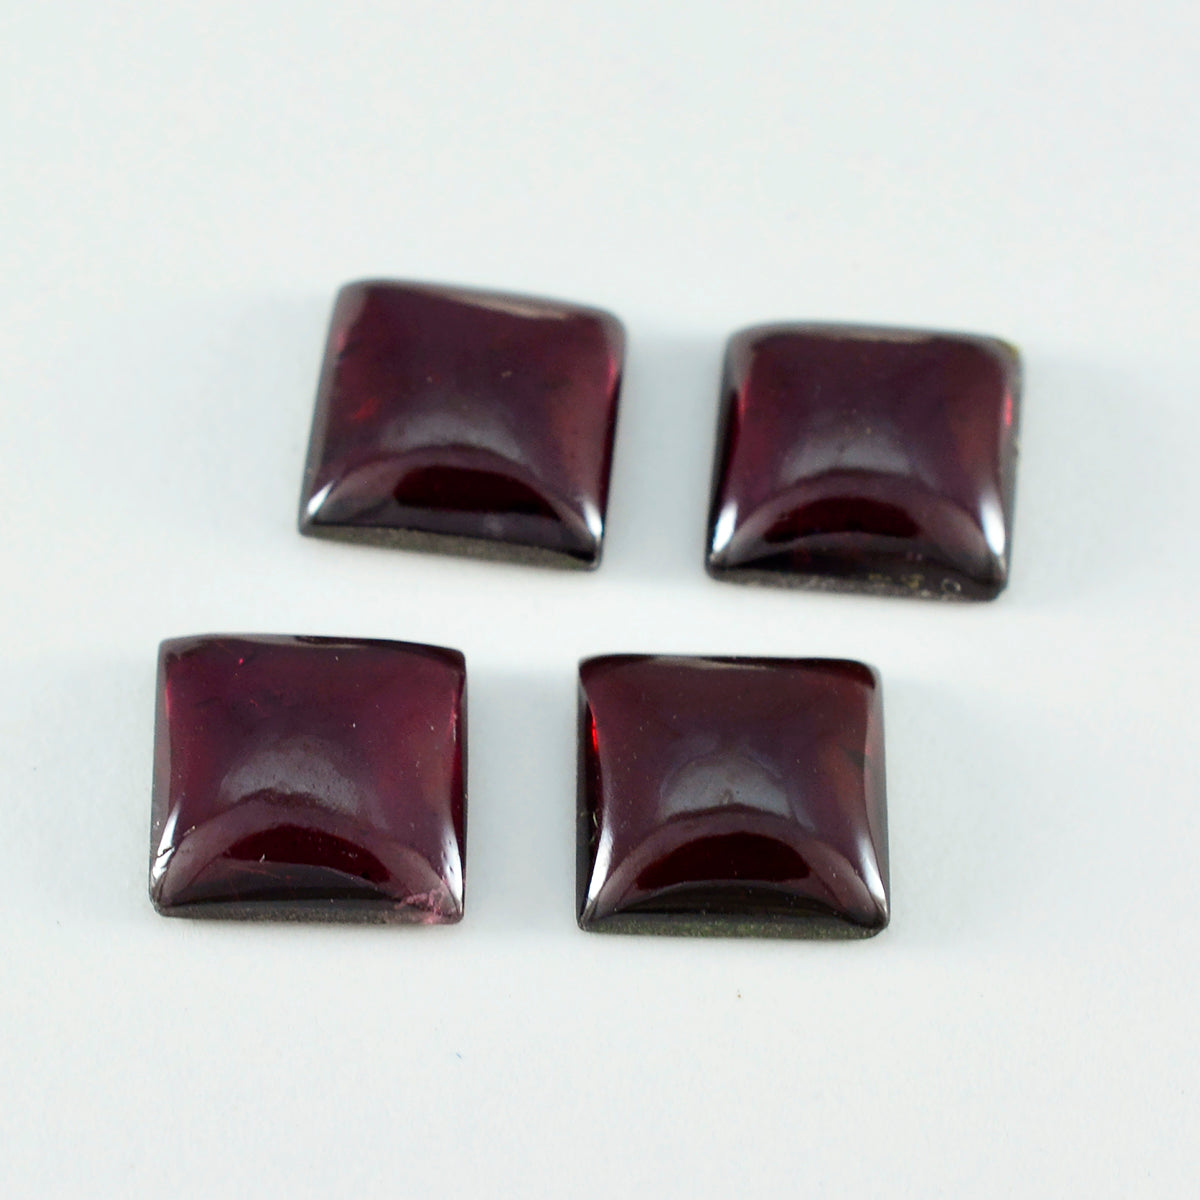 Riyogems 1 Stück roter Granat-Cabochon, 12 x 12 mm, quadratische Form, hochwertiger Edelstein